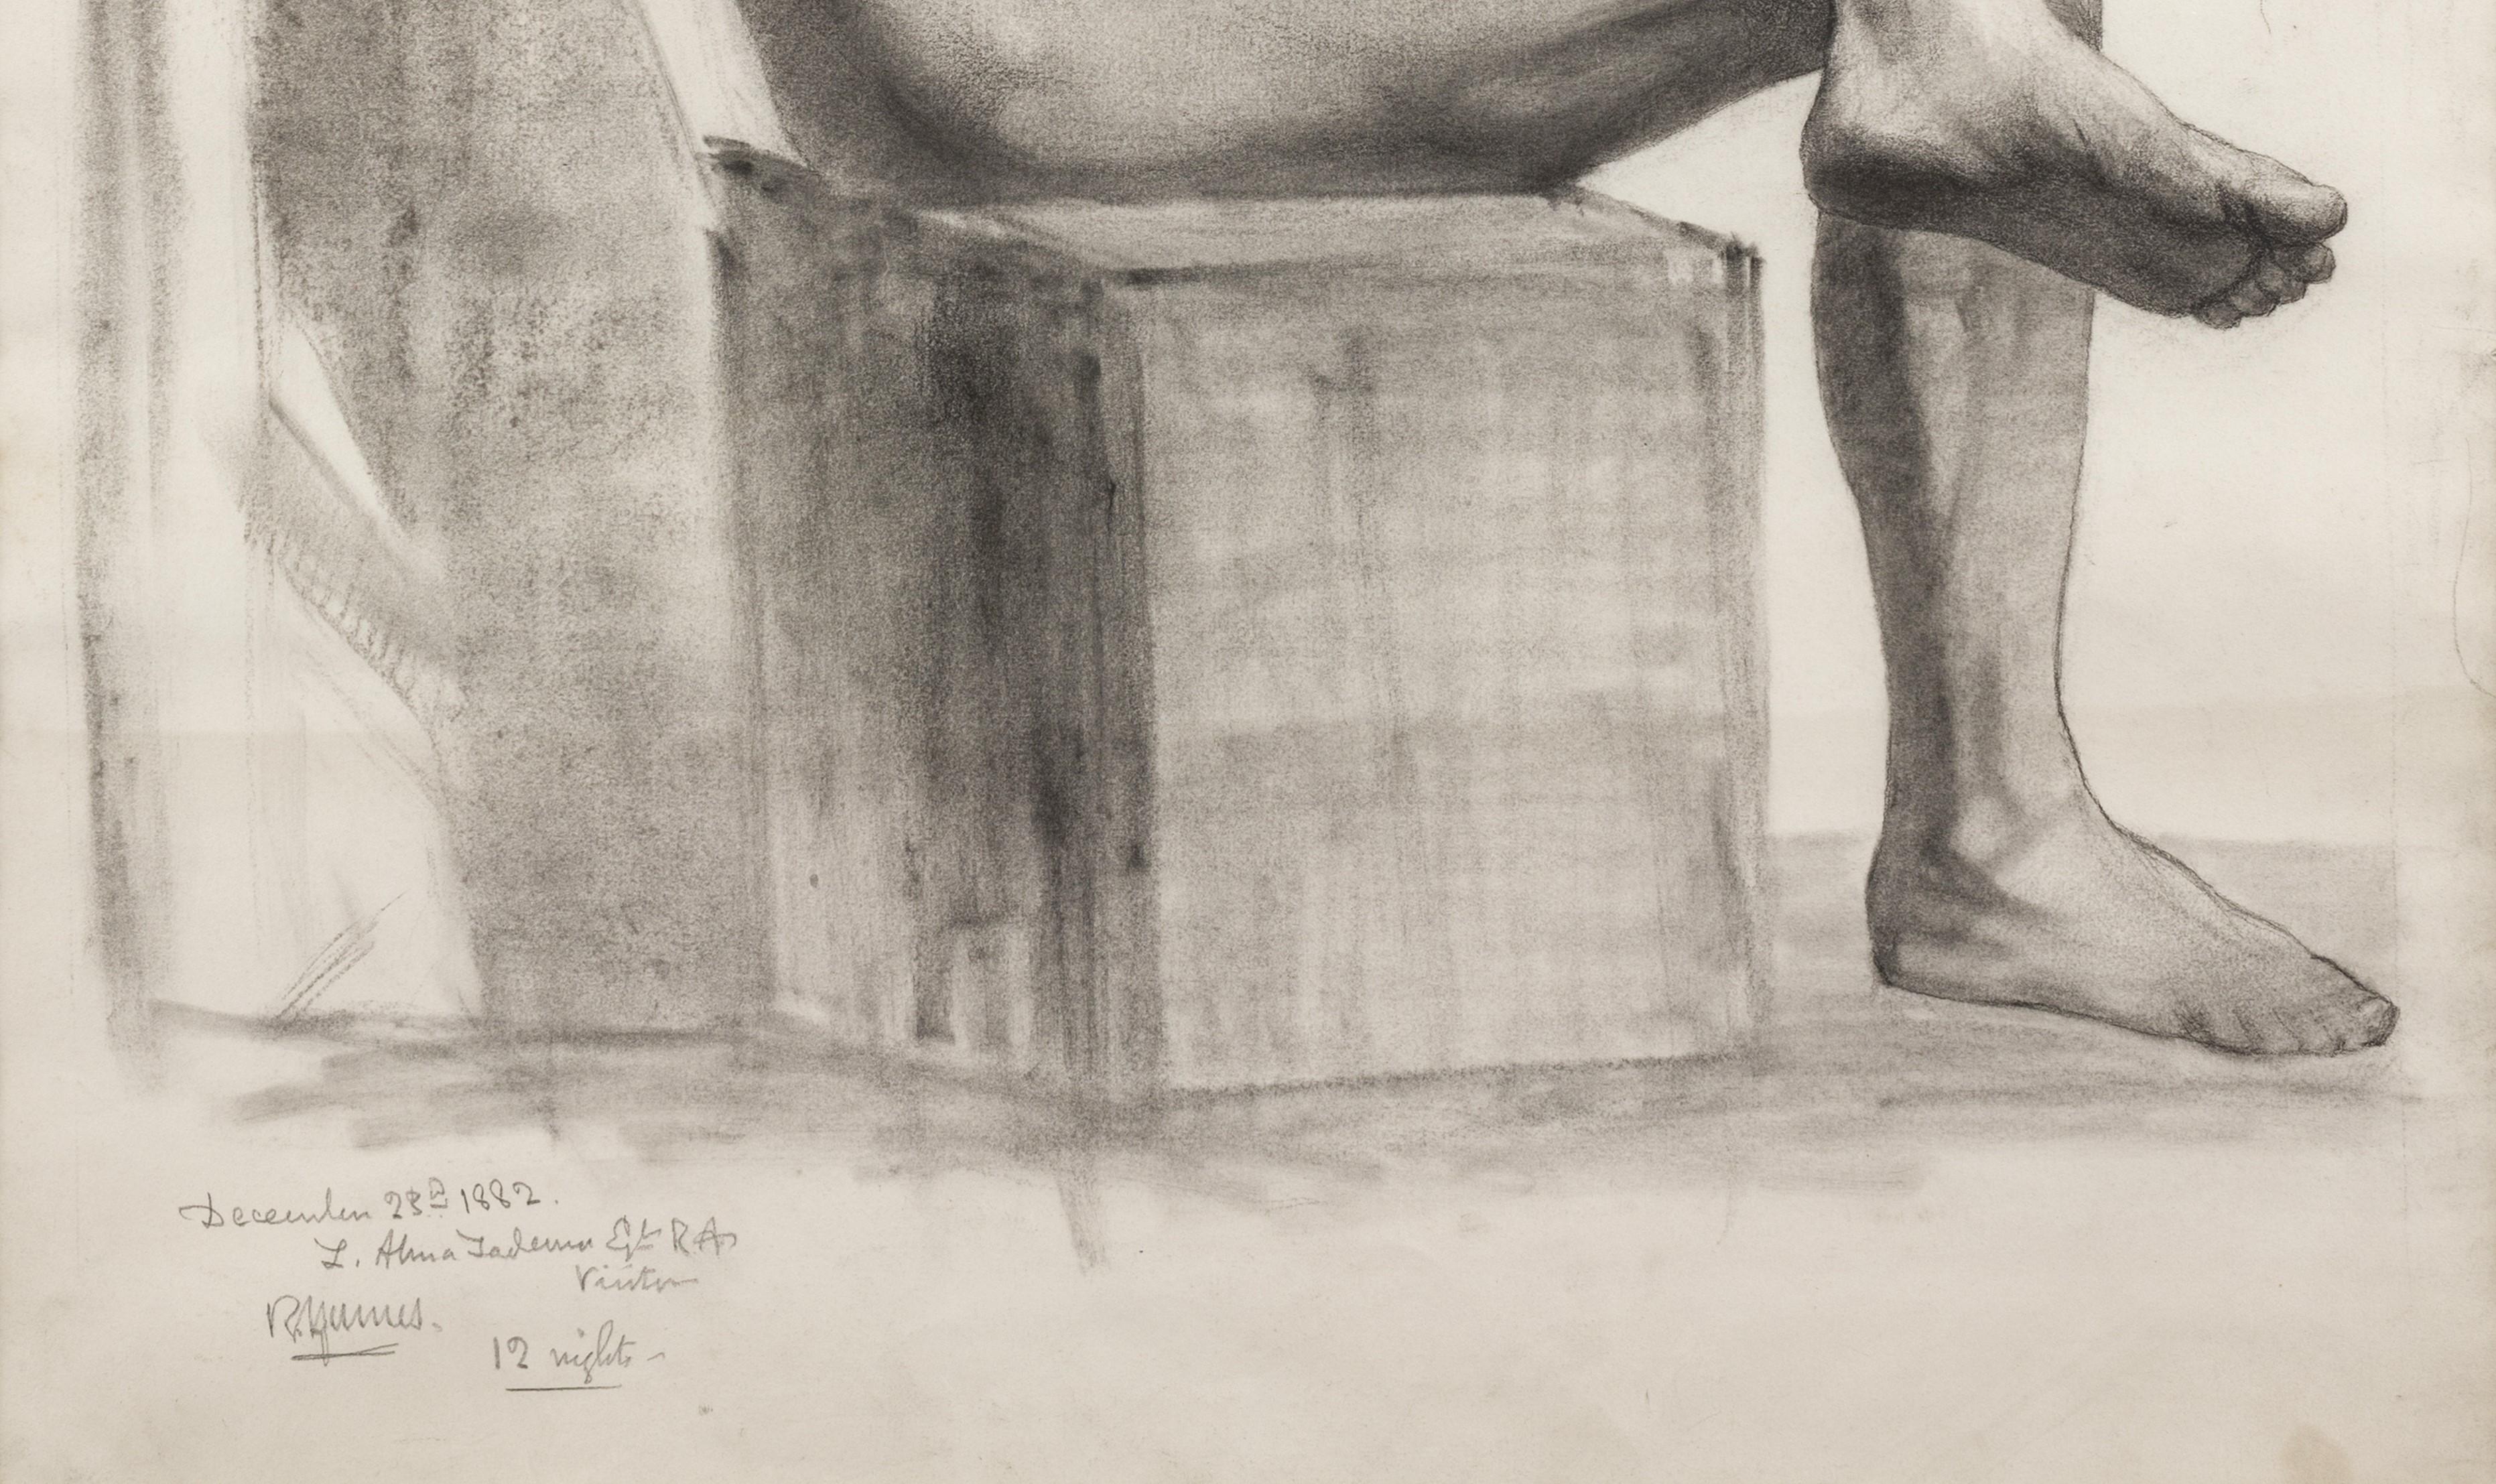 Kohle auf Papier, signiert vom Künstler (oben rechts) und RA Besucher L. Alma Tadema, RA. und datiert (unten links), 76cm x 57cm, (64cm x 88cm gerahmt). 

Olivier studierte ab 1881 an der Royal Academy School, an der diese außergewöhnliche